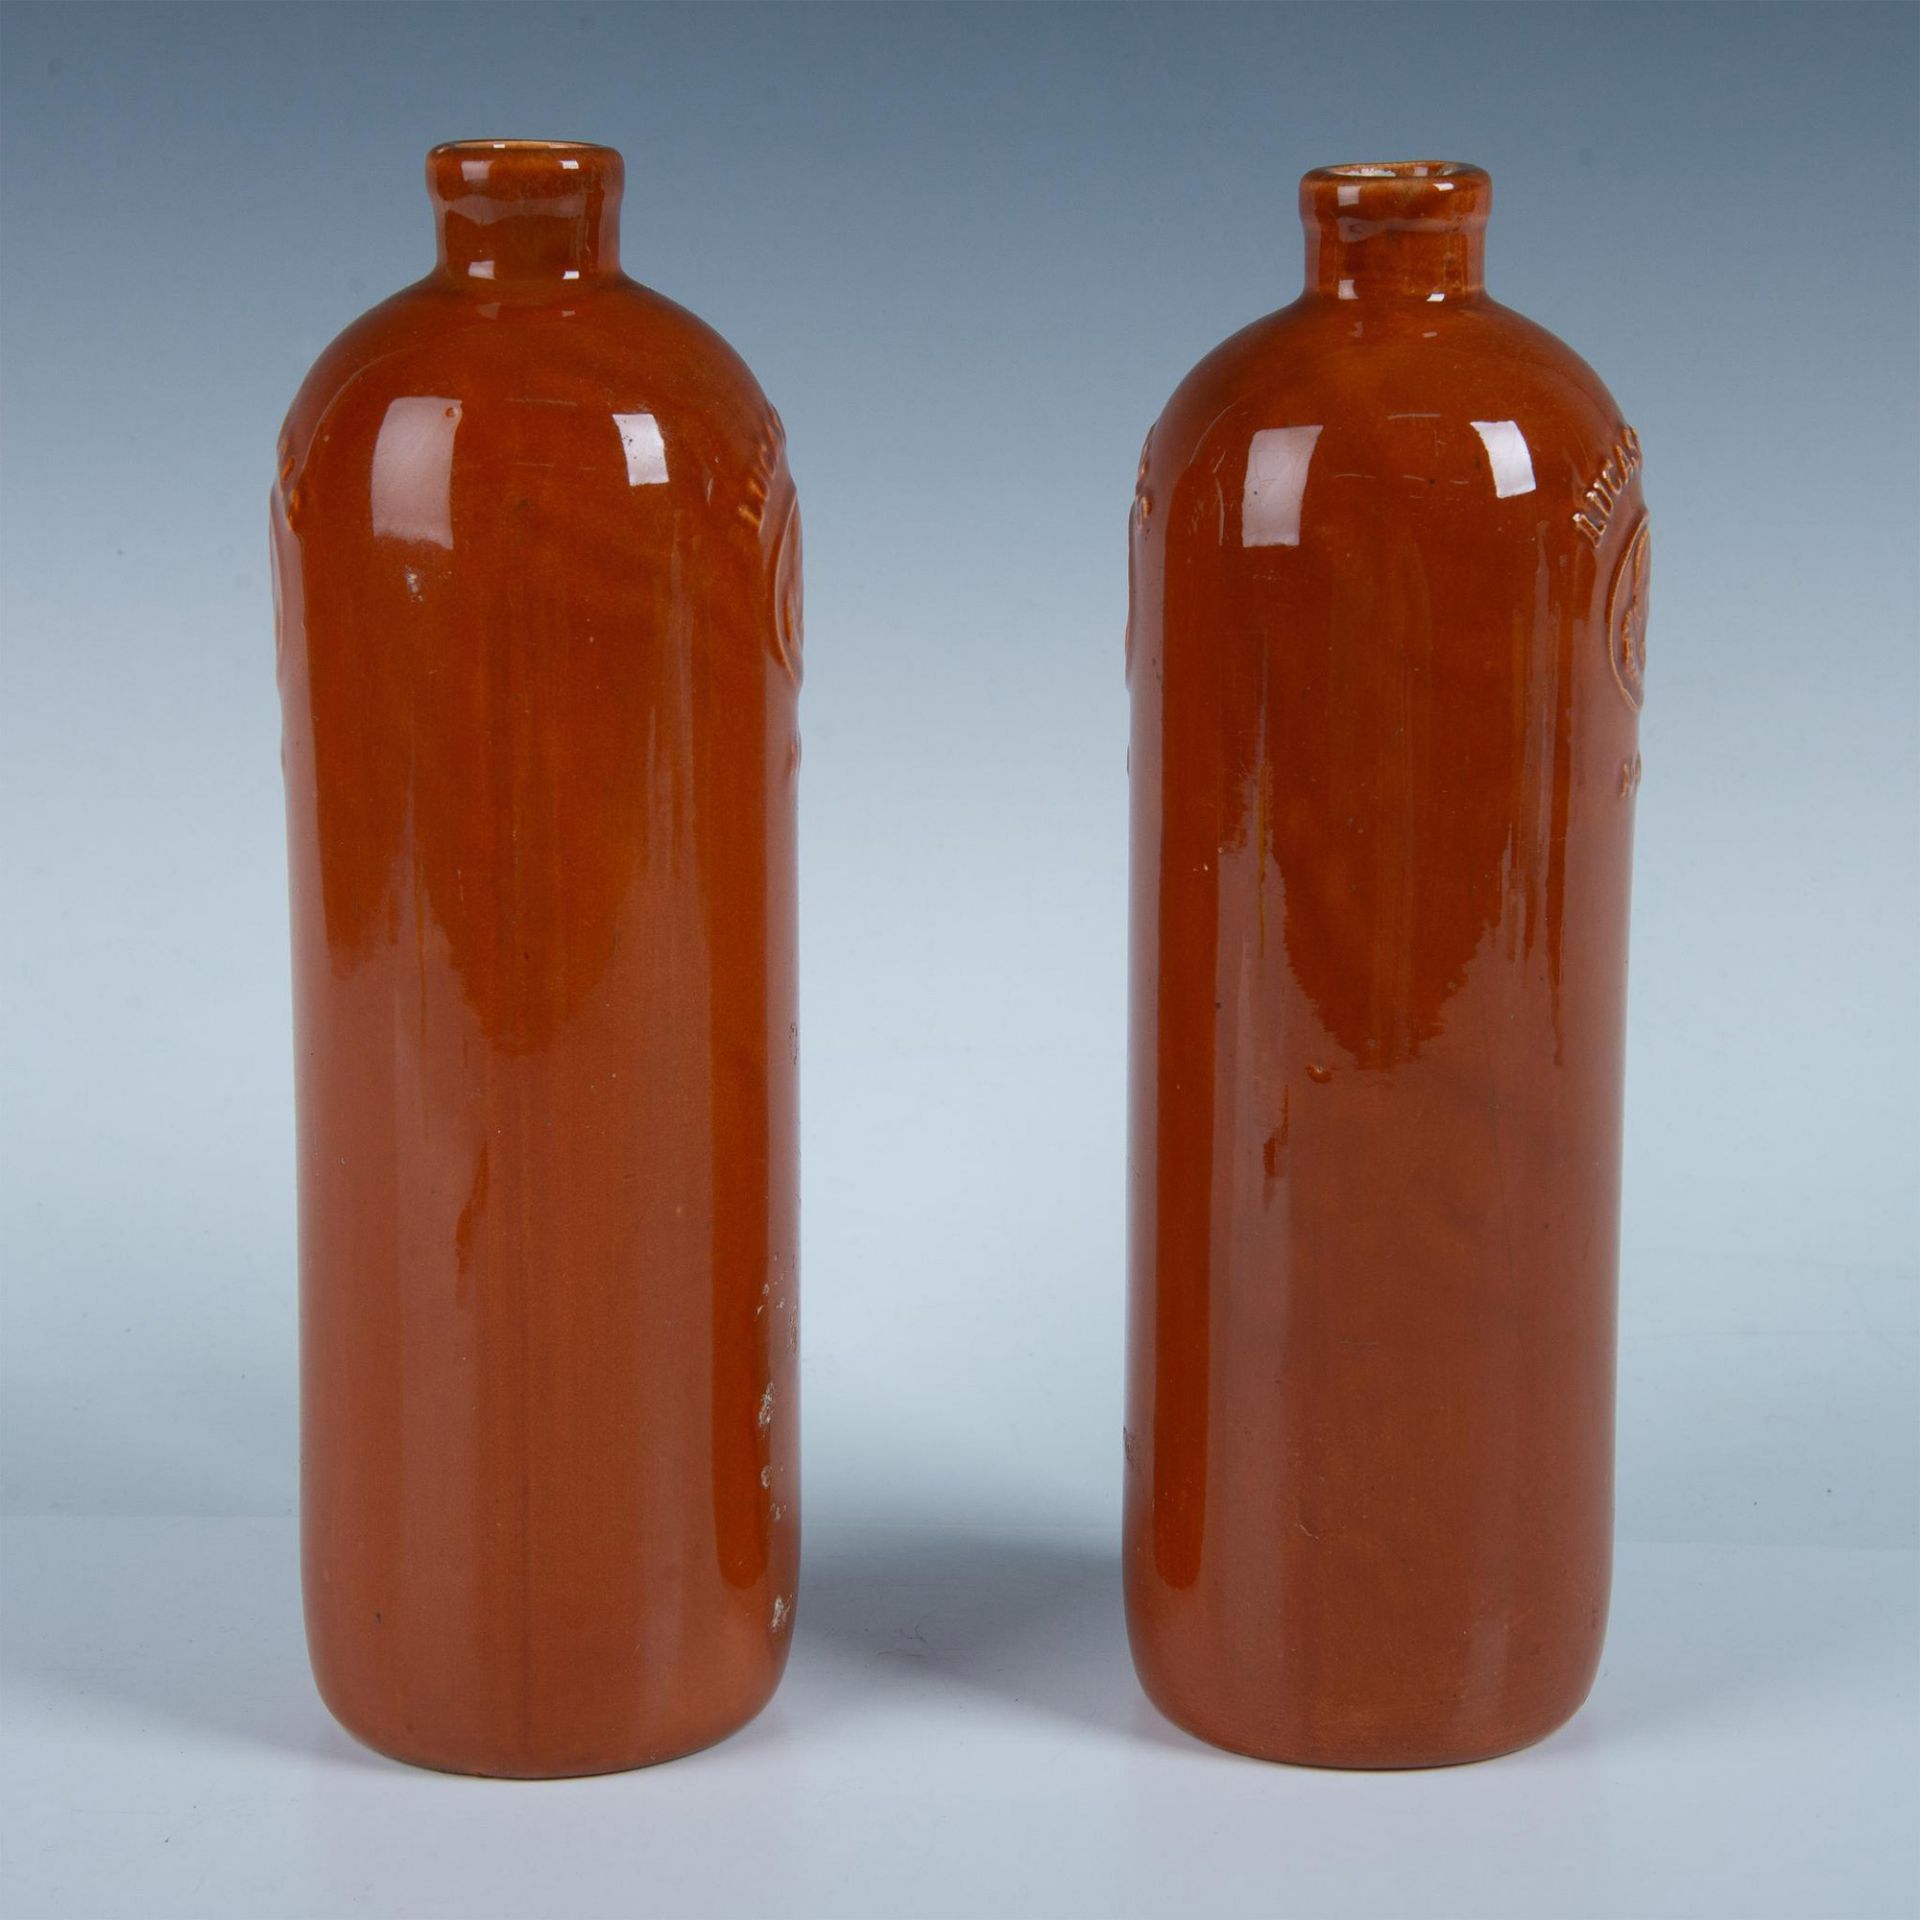 2pc Antique Ceramic Liquor Bottles, Lucas Bols - Image 2 of 6